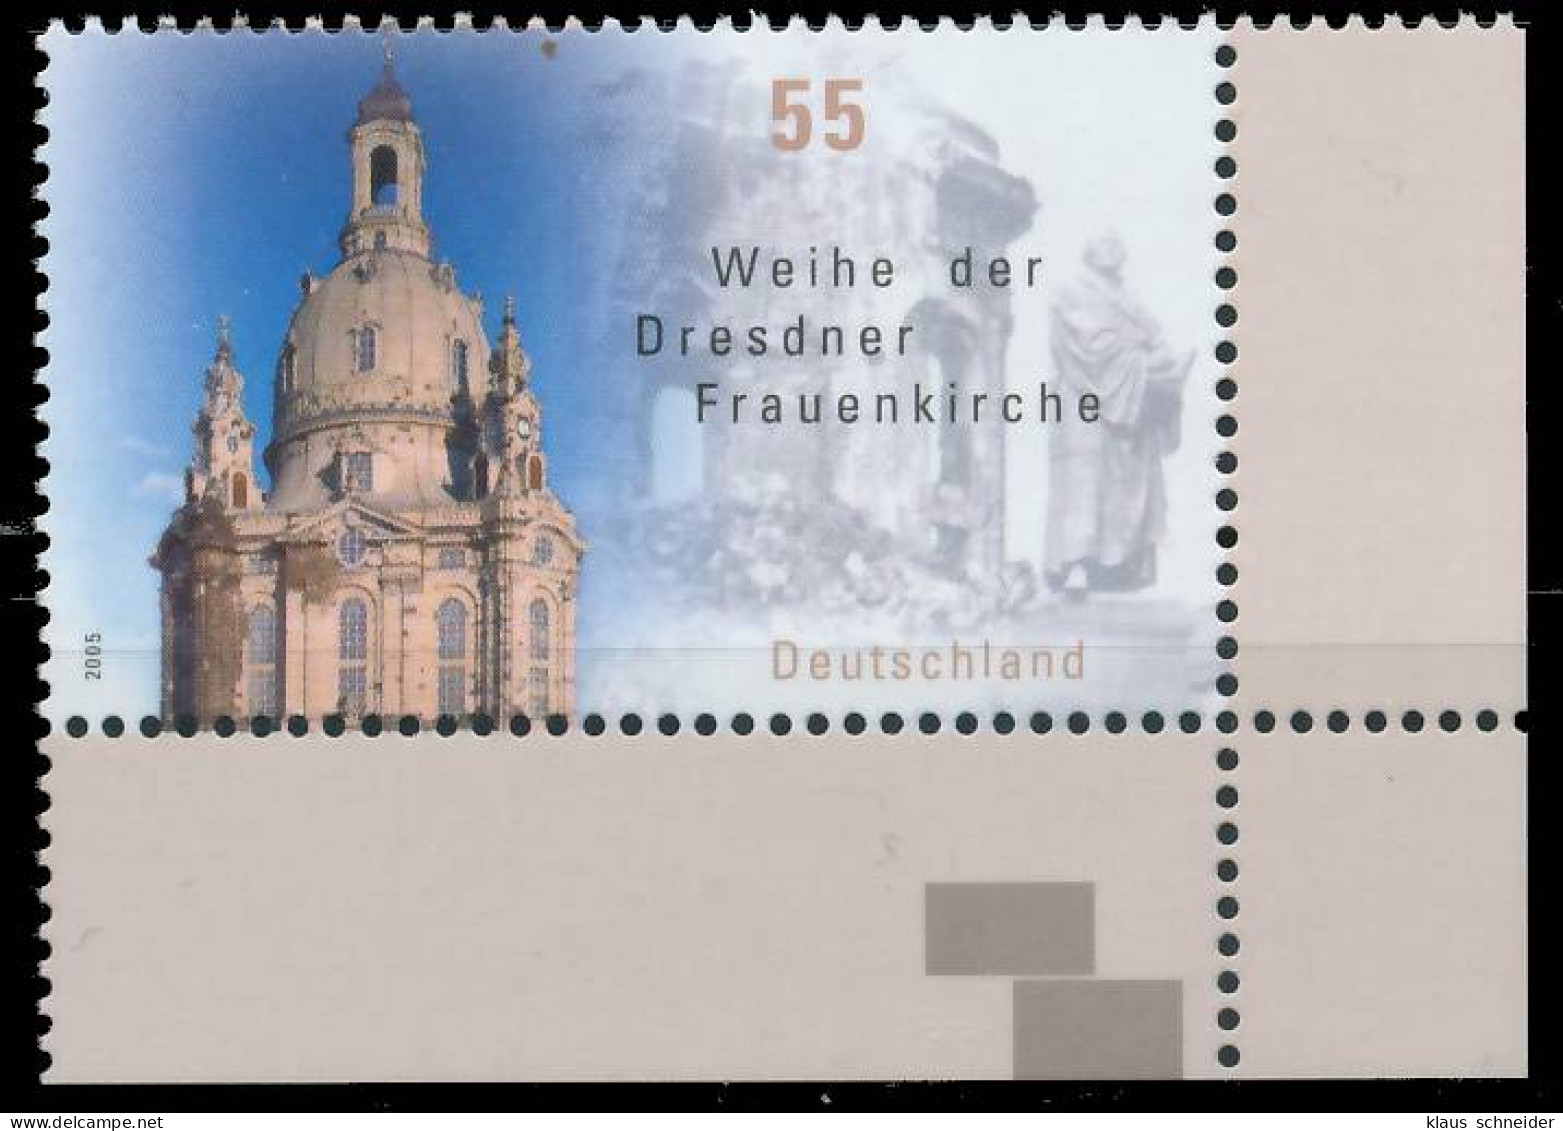 BRD BUND 2005 Nr 2491 Postfrisch ECKE-URE X393BF6 - Unused Stamps